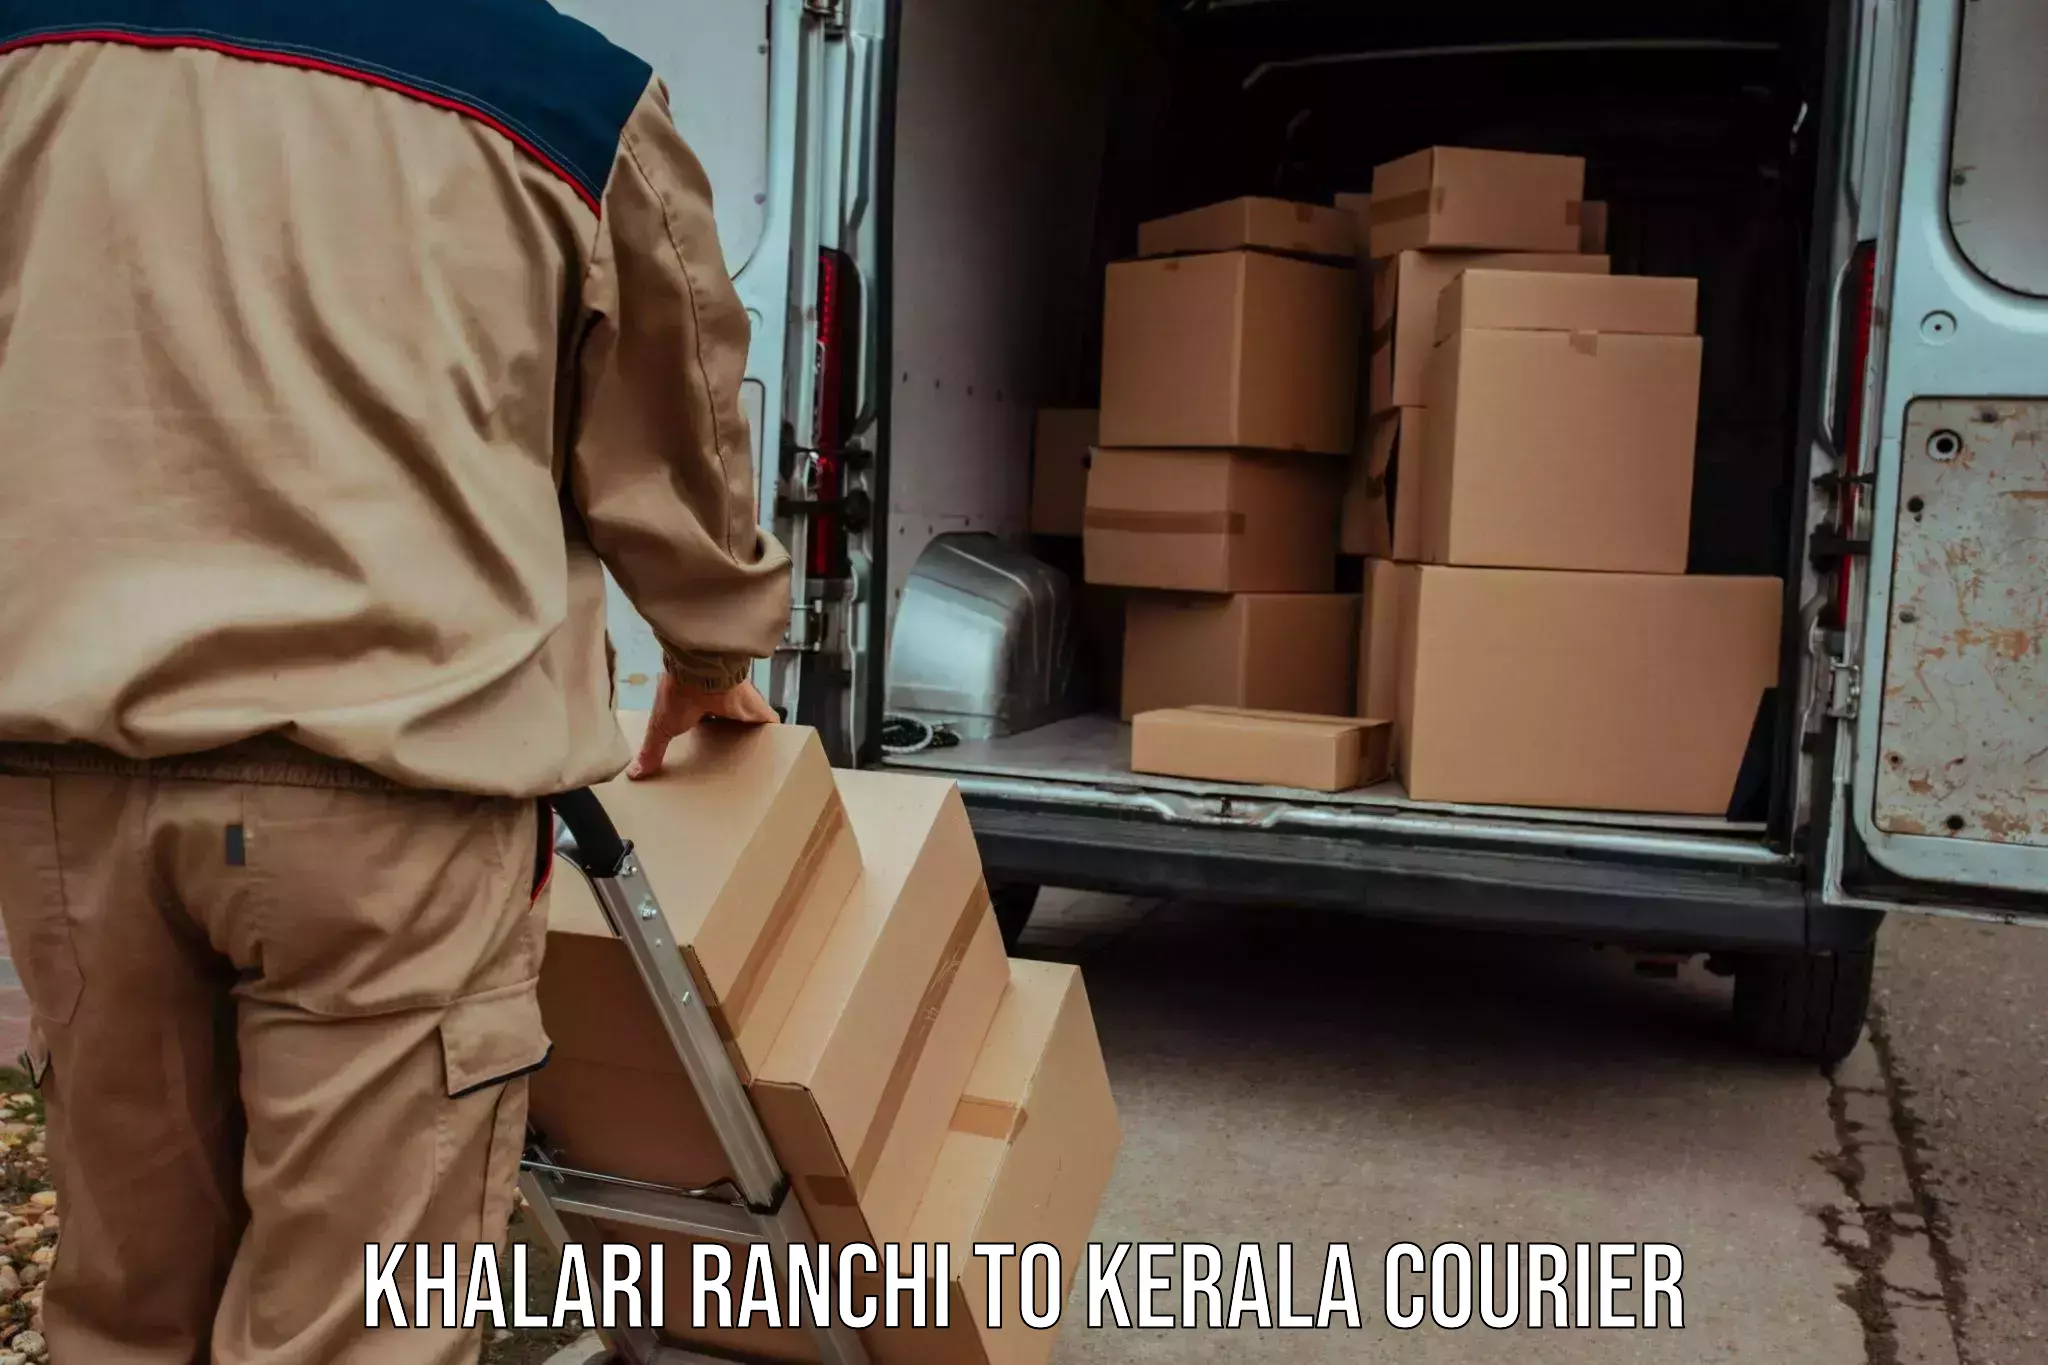 Express package delivery Khalari Ranchi to Kerala